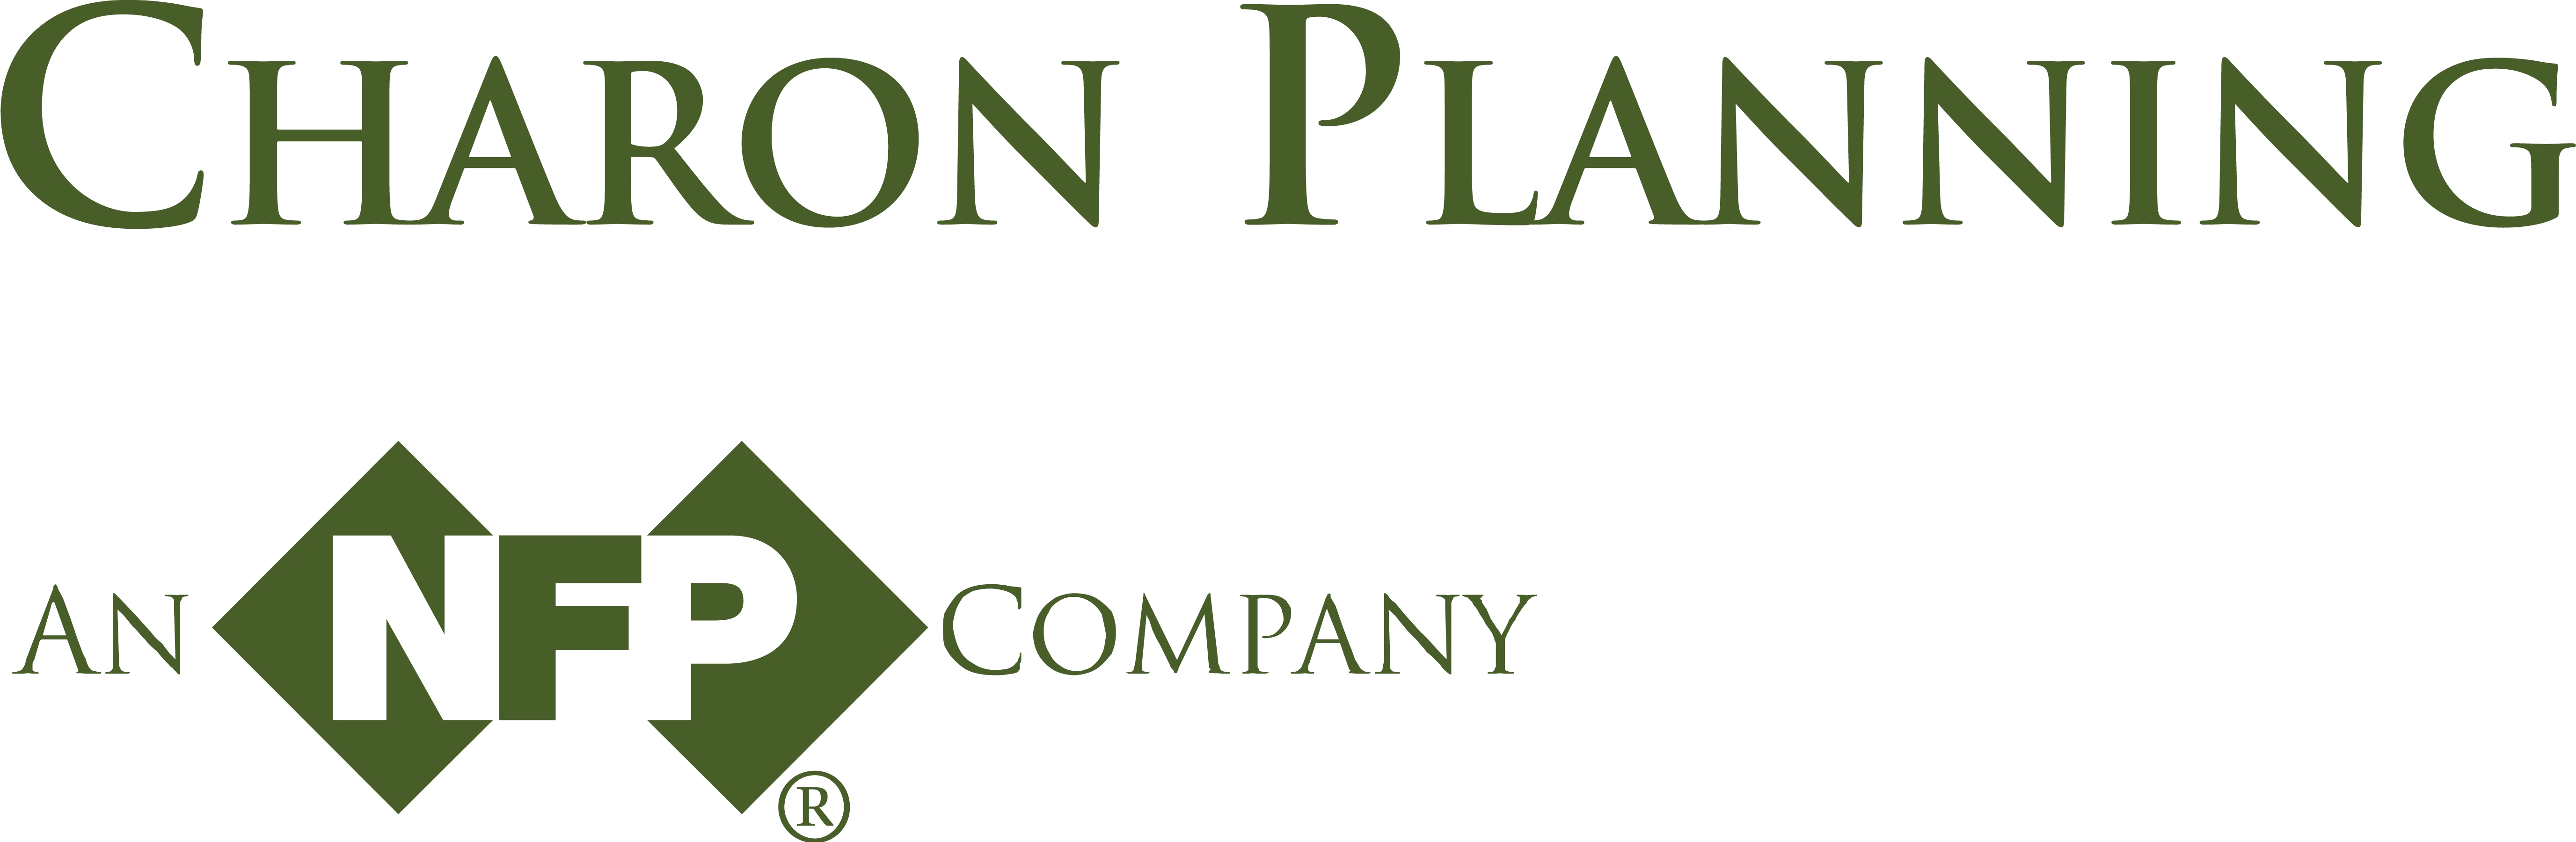 Charon Planning Corporation logo